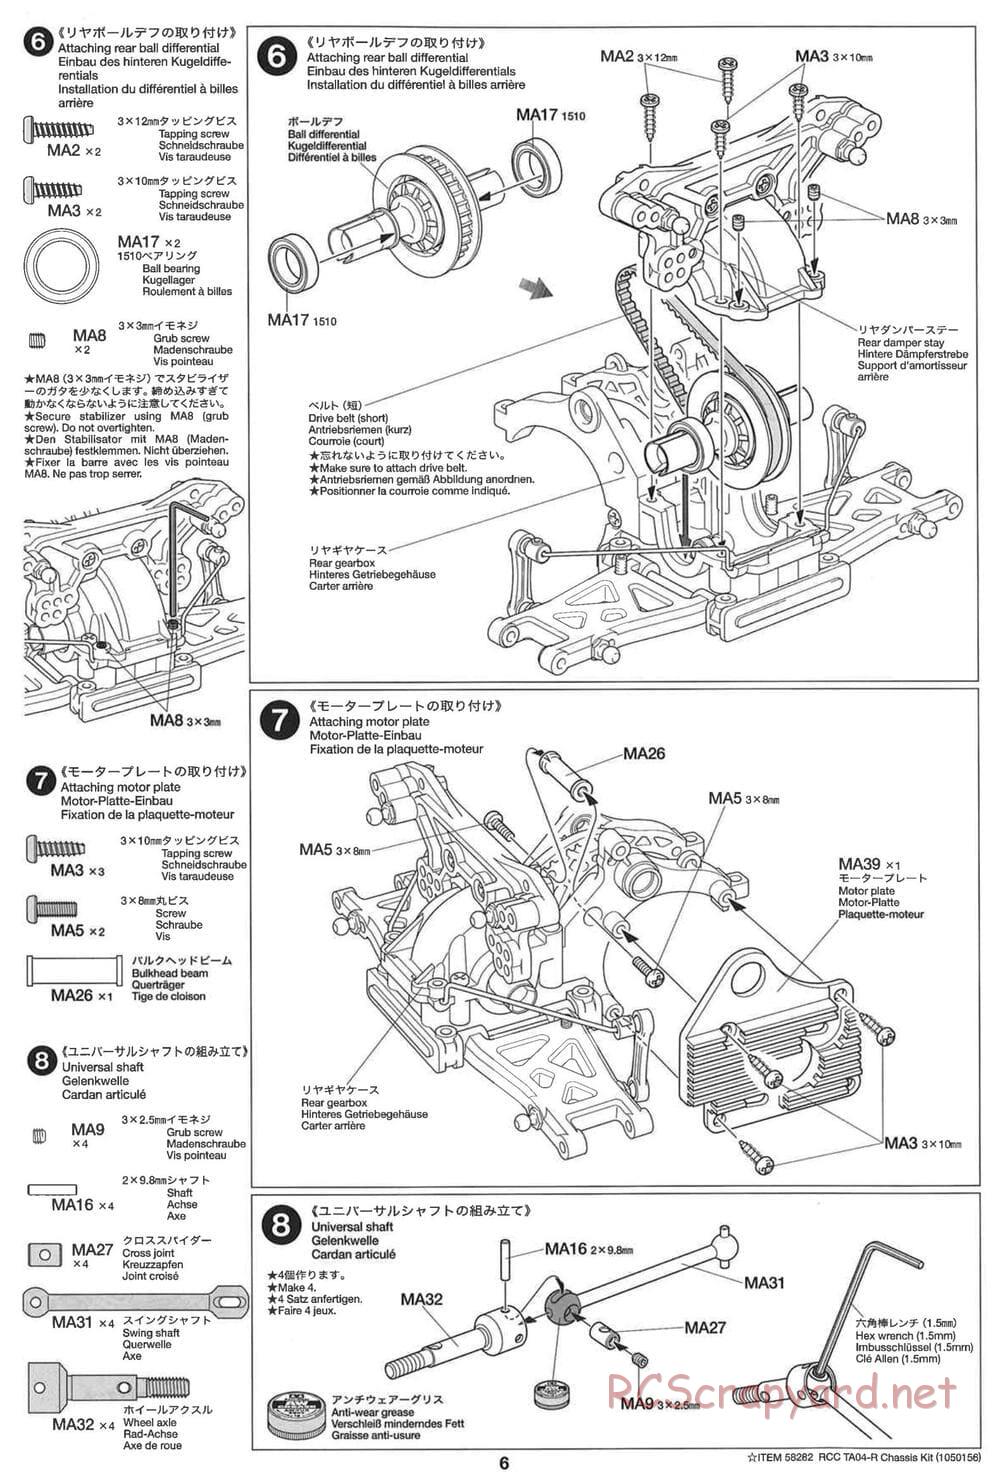 Tamiya - TA-04R Chassis - Manual - Page 6